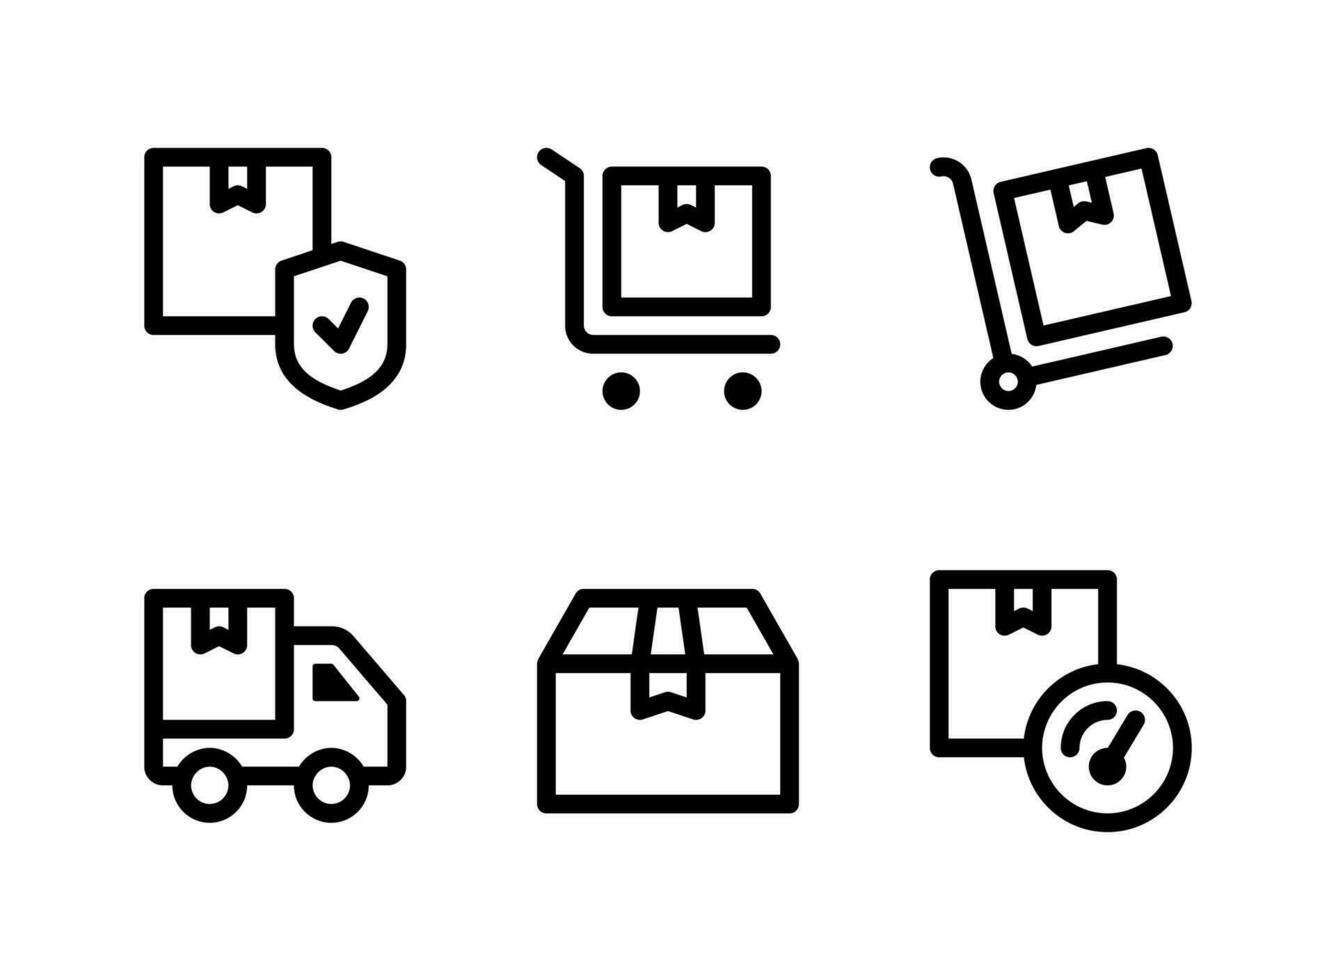 enkel uppsättning logistikrelaterade vektorlinjeikoner. innehåller ikoner som säkert paket, vagn, lastbil, leverans och mer. vektor